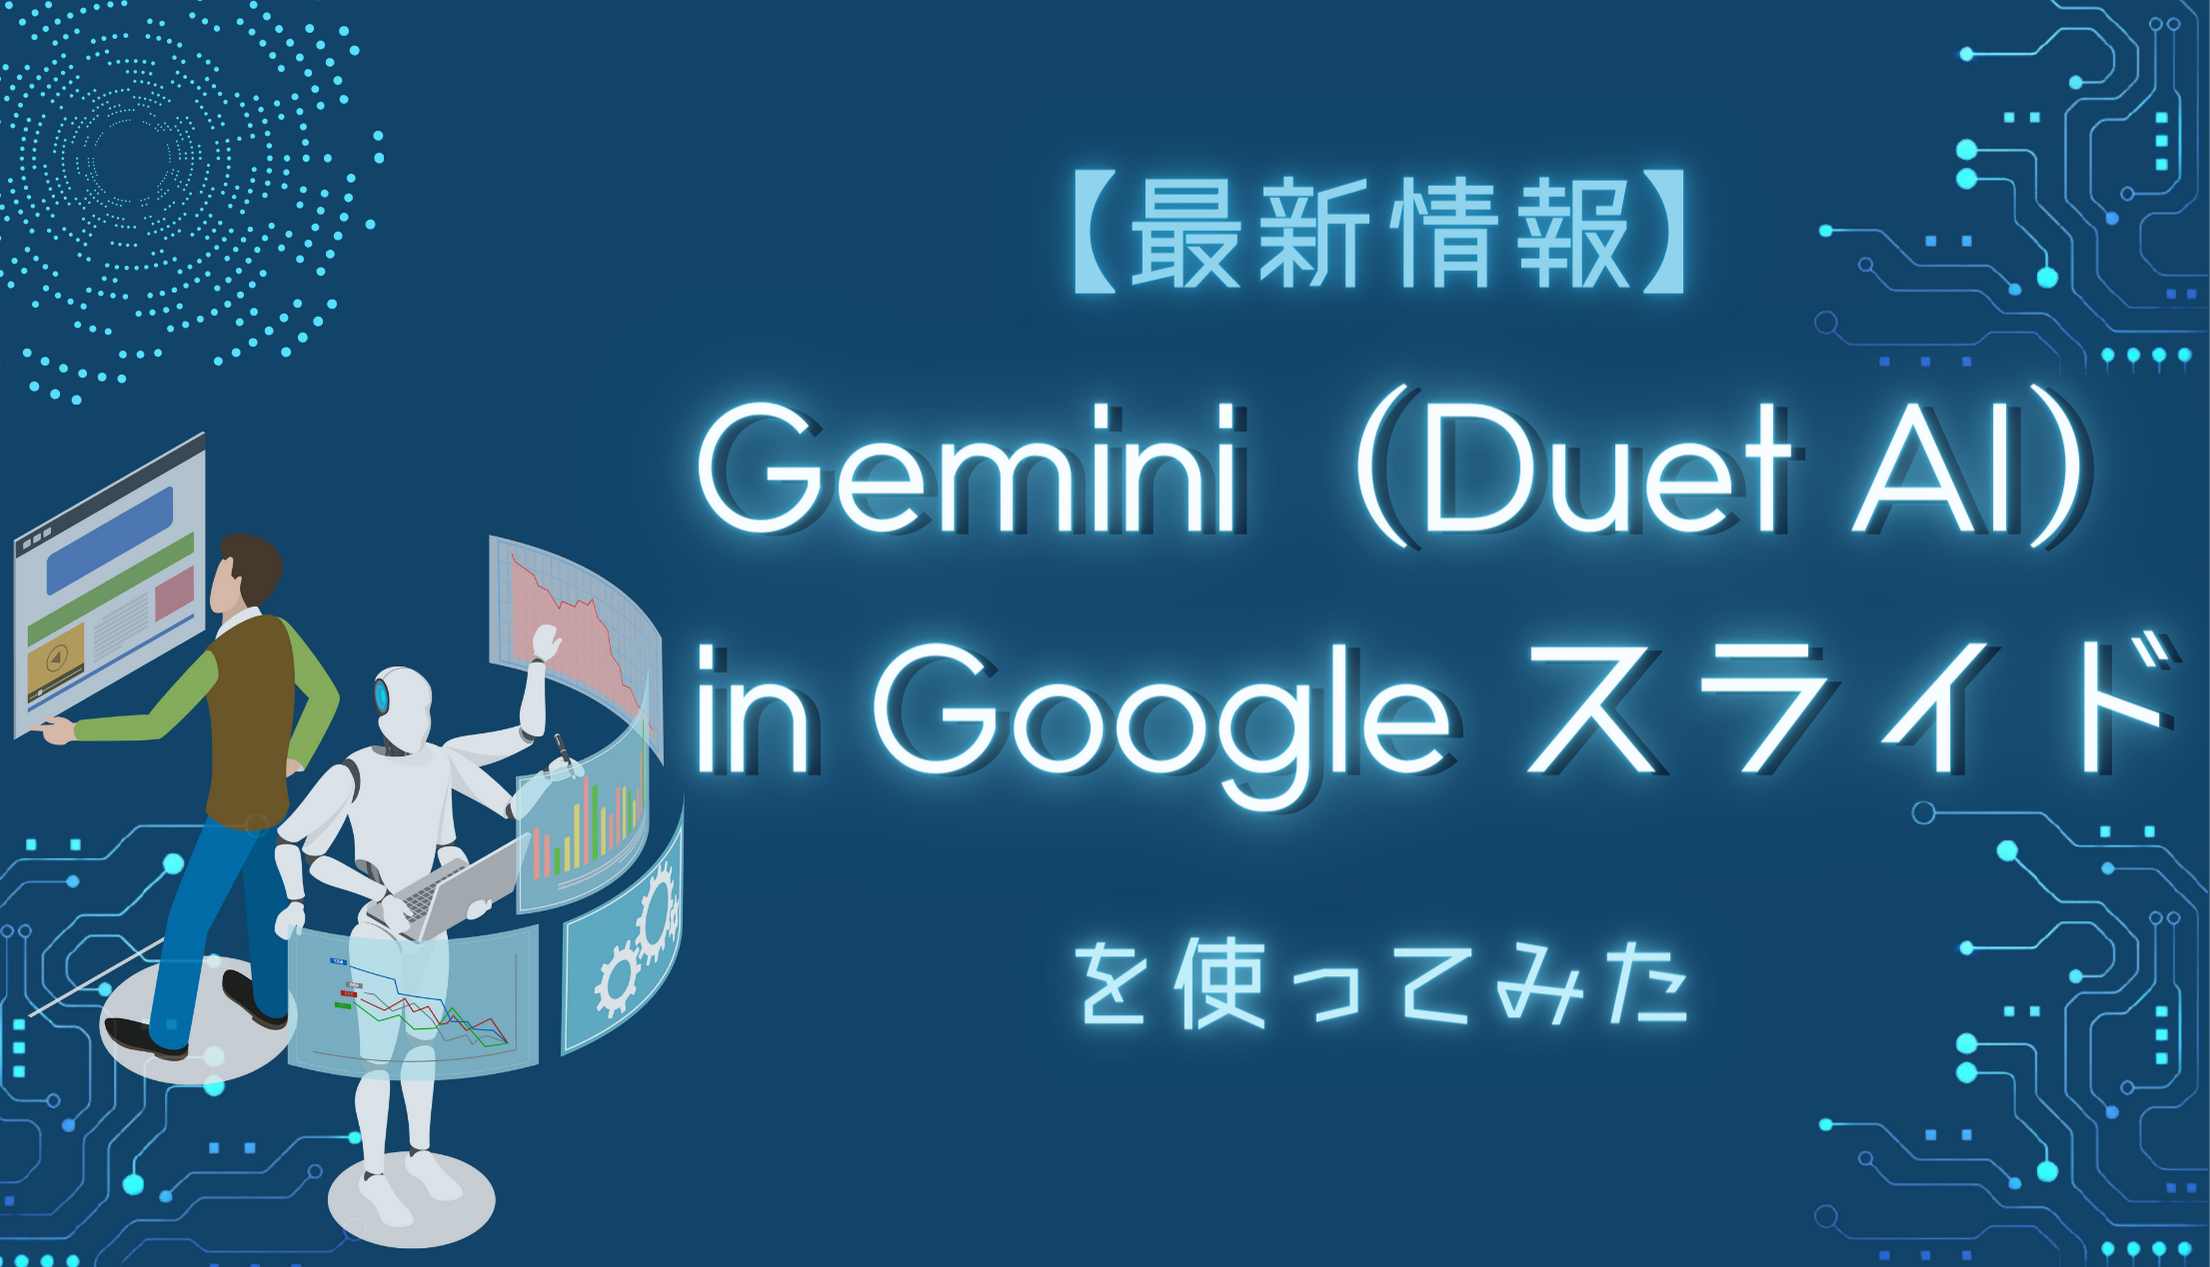 【最新情報】Gemini ( Duet AI ) in Google スライド を使ってみたサムネイル画像